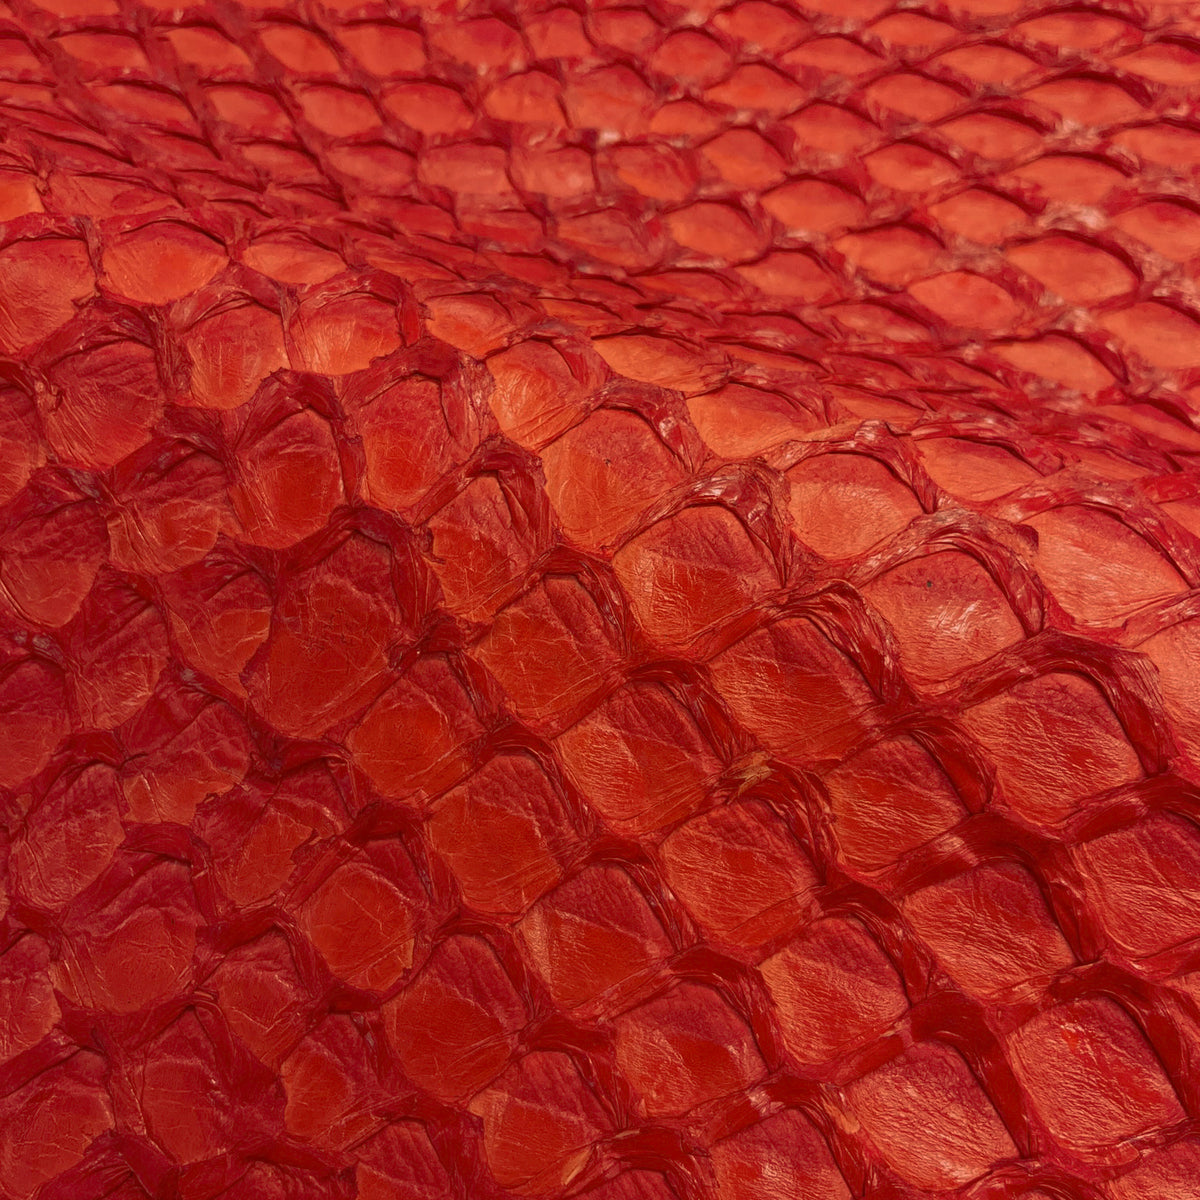 Pirarucu Fish | Inverted Semi-Shine | Red Orange